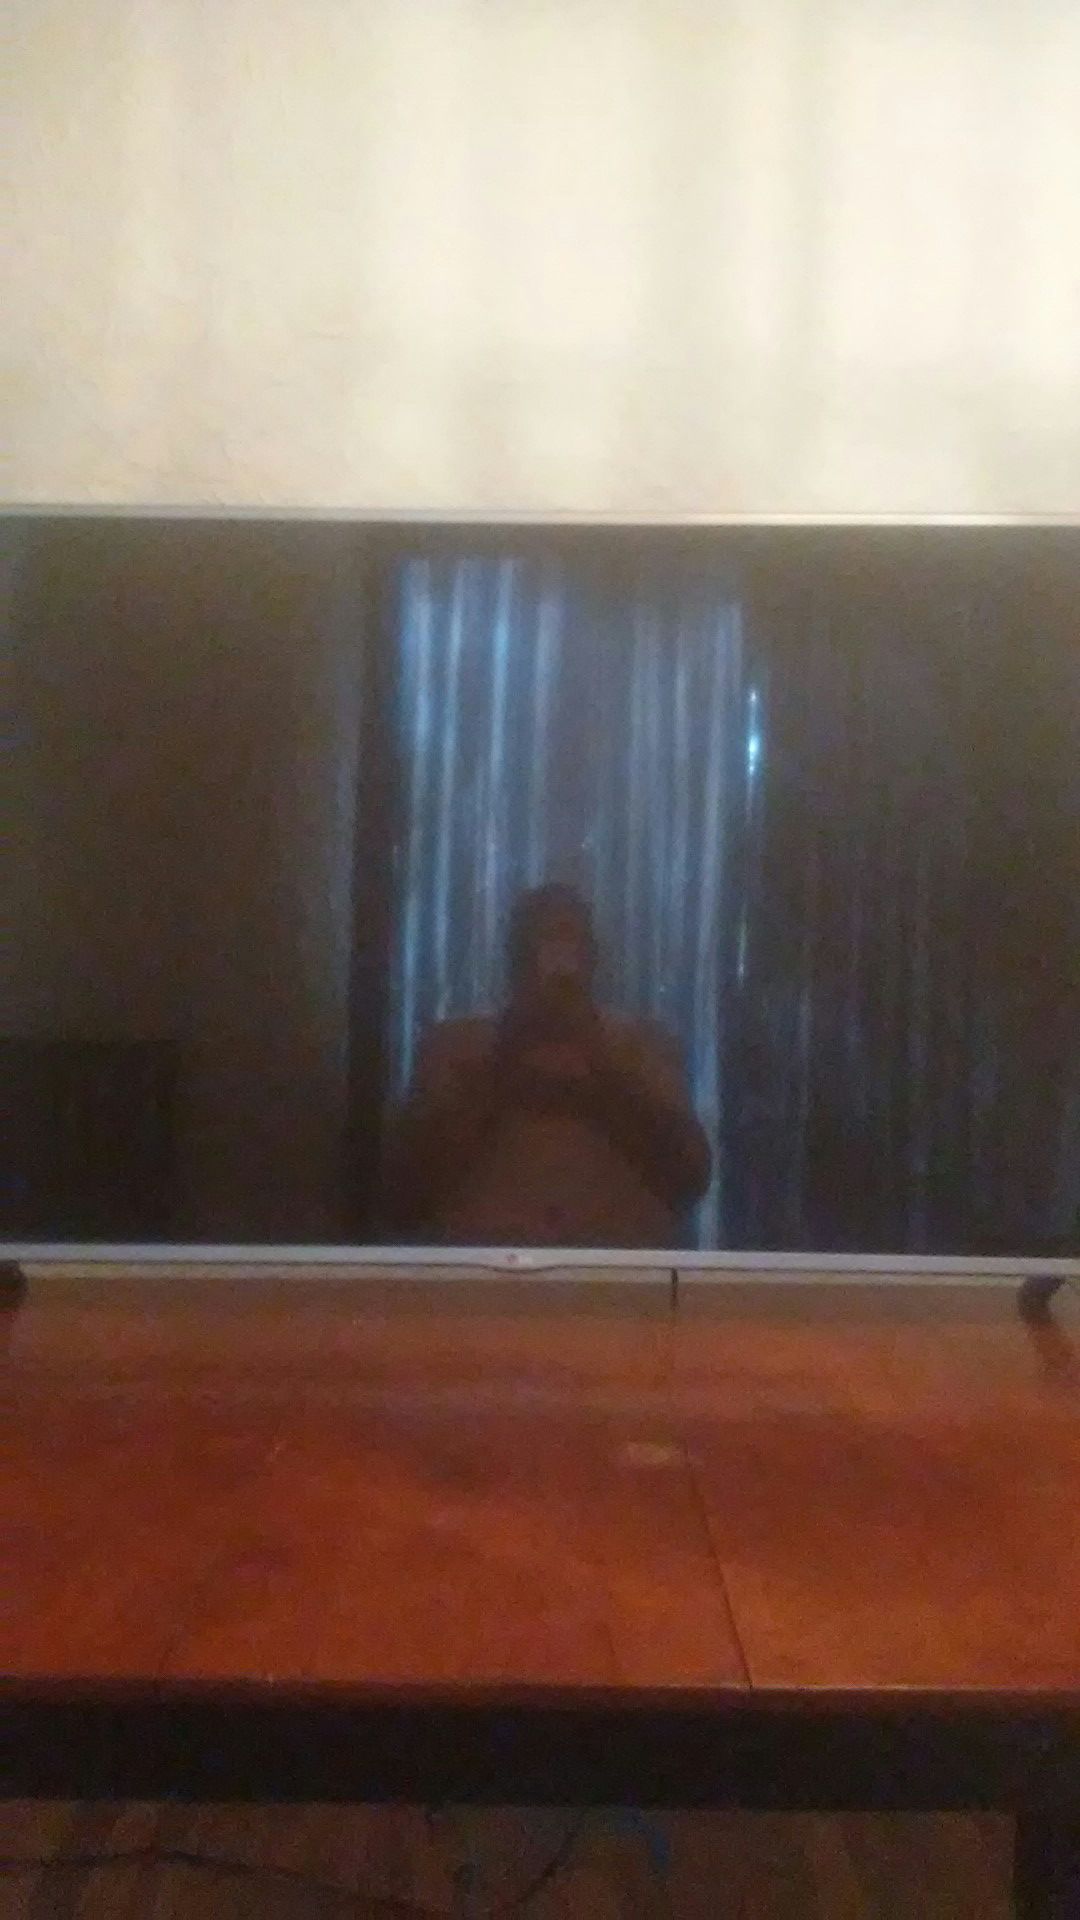 55"inch LG TV